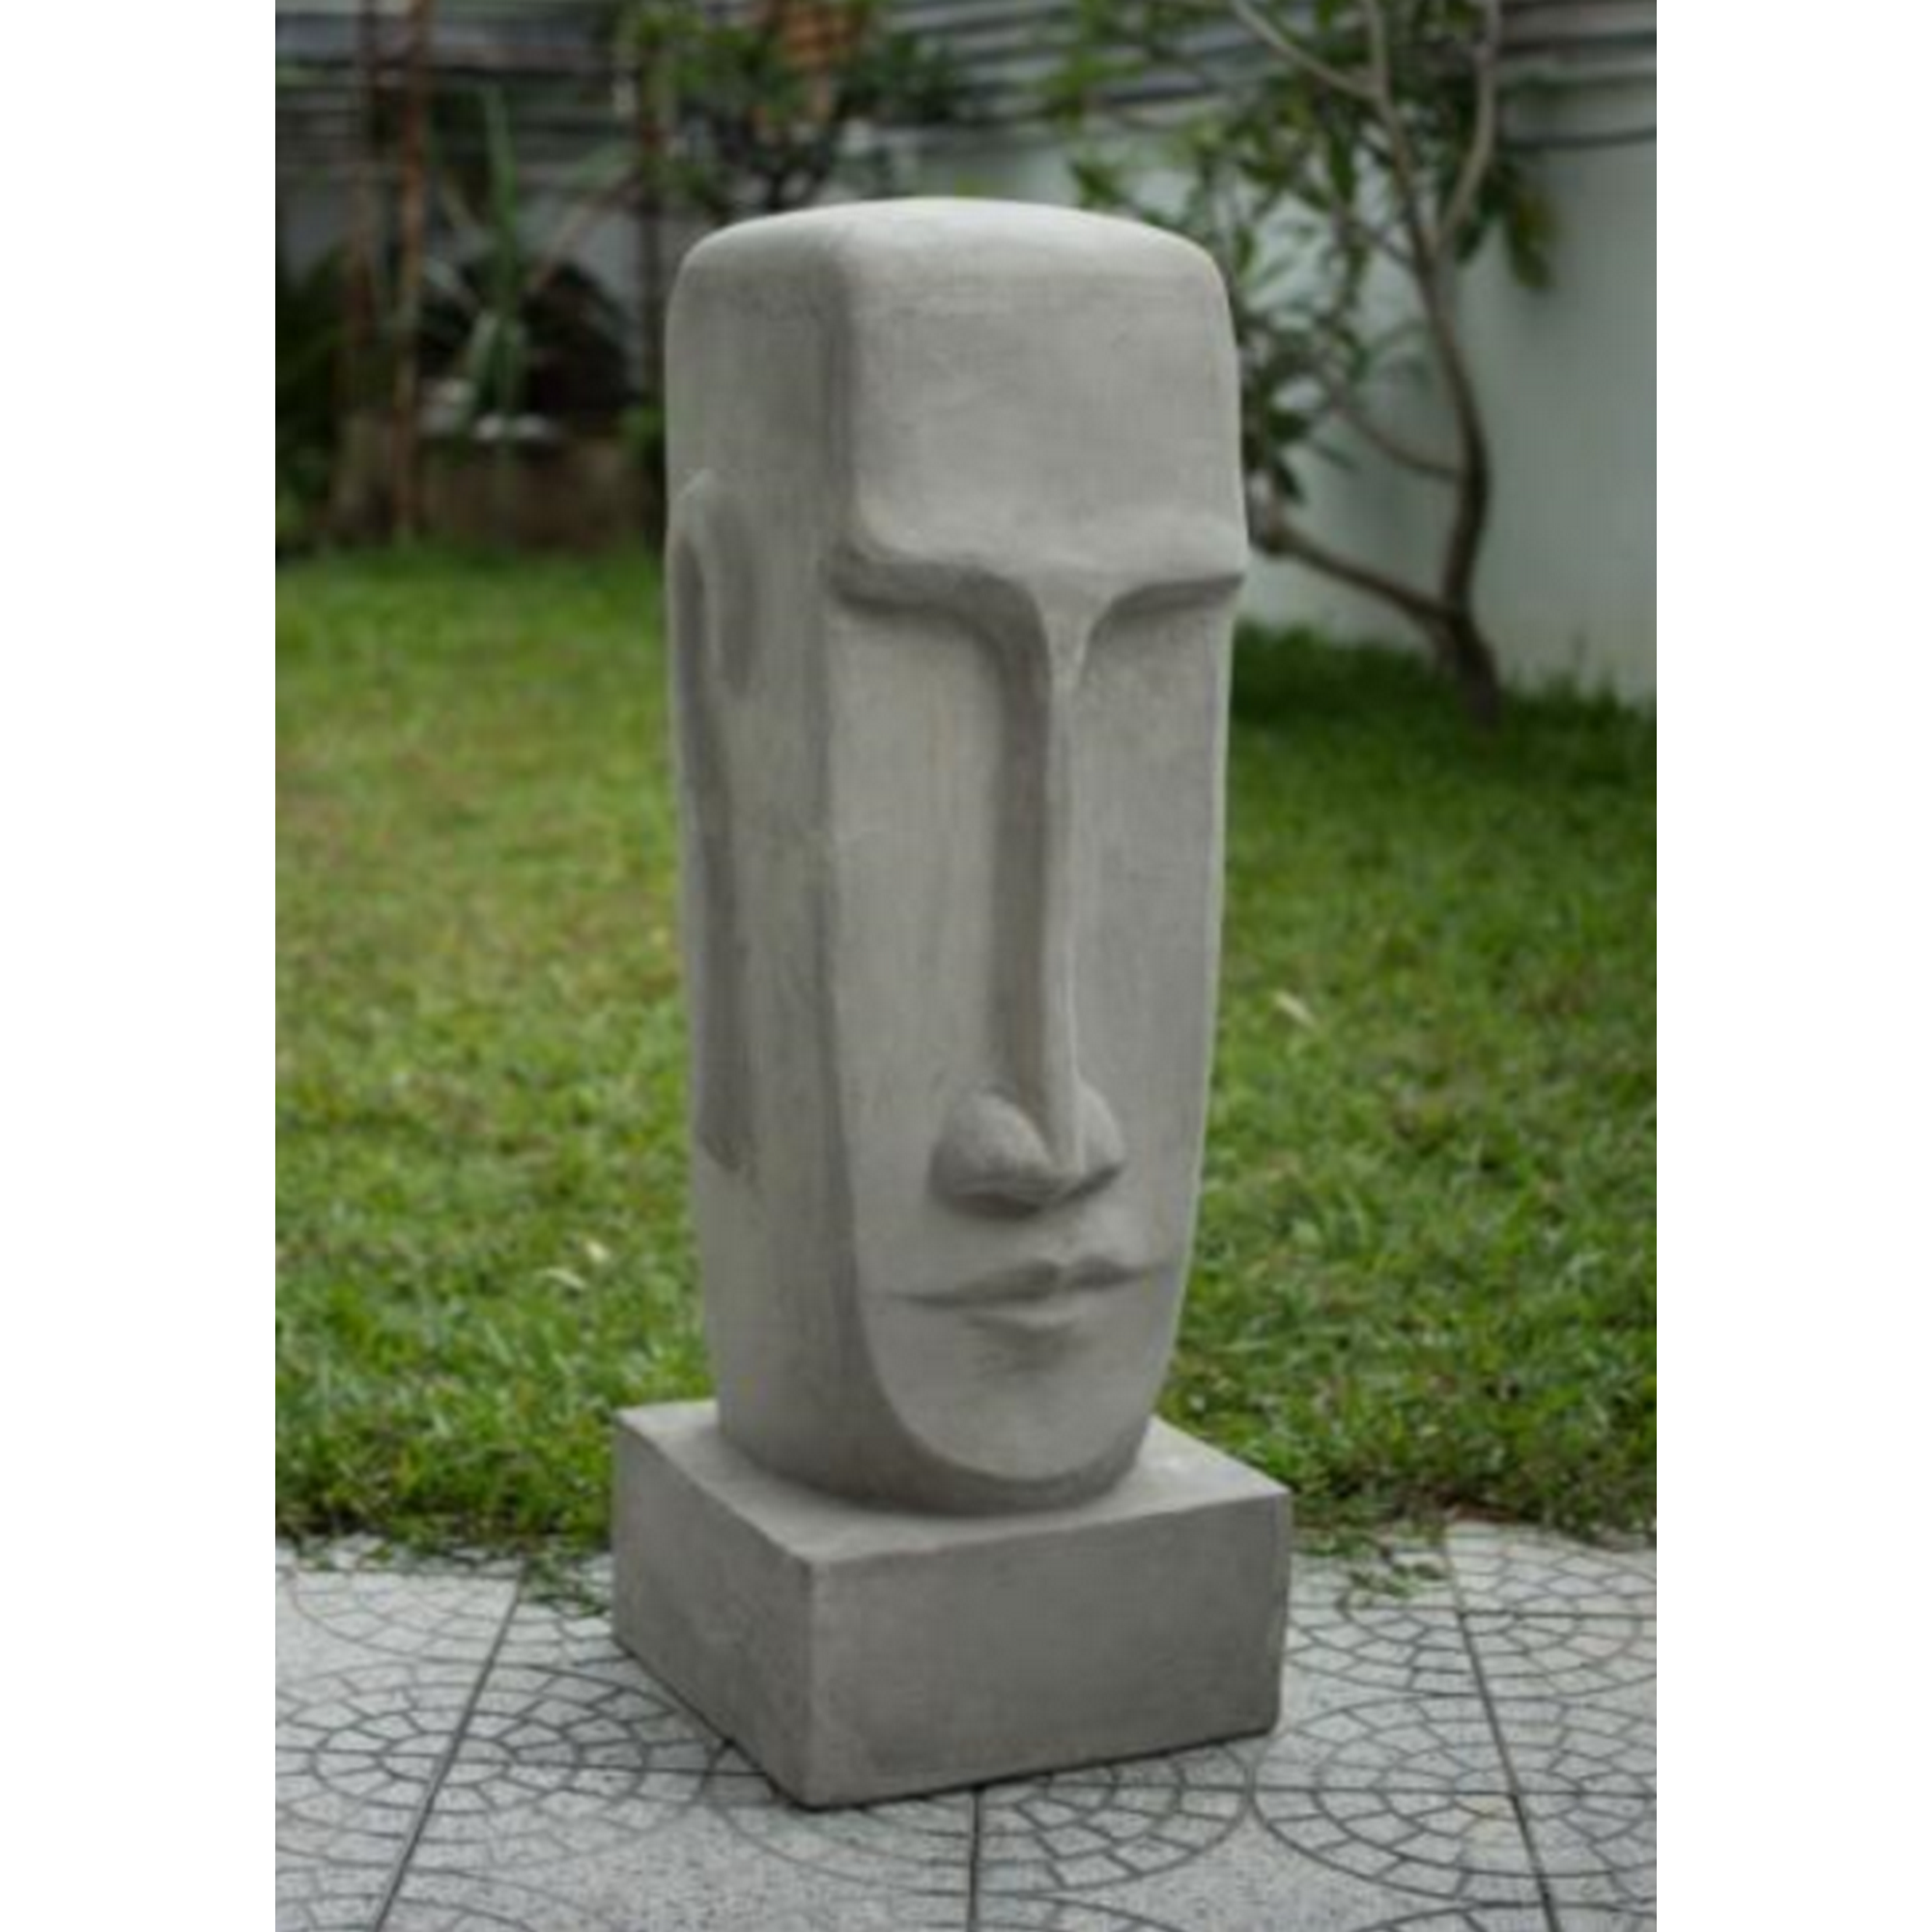 Gartenfigur Zement grau 121 x 40 x 43 cm + product picture